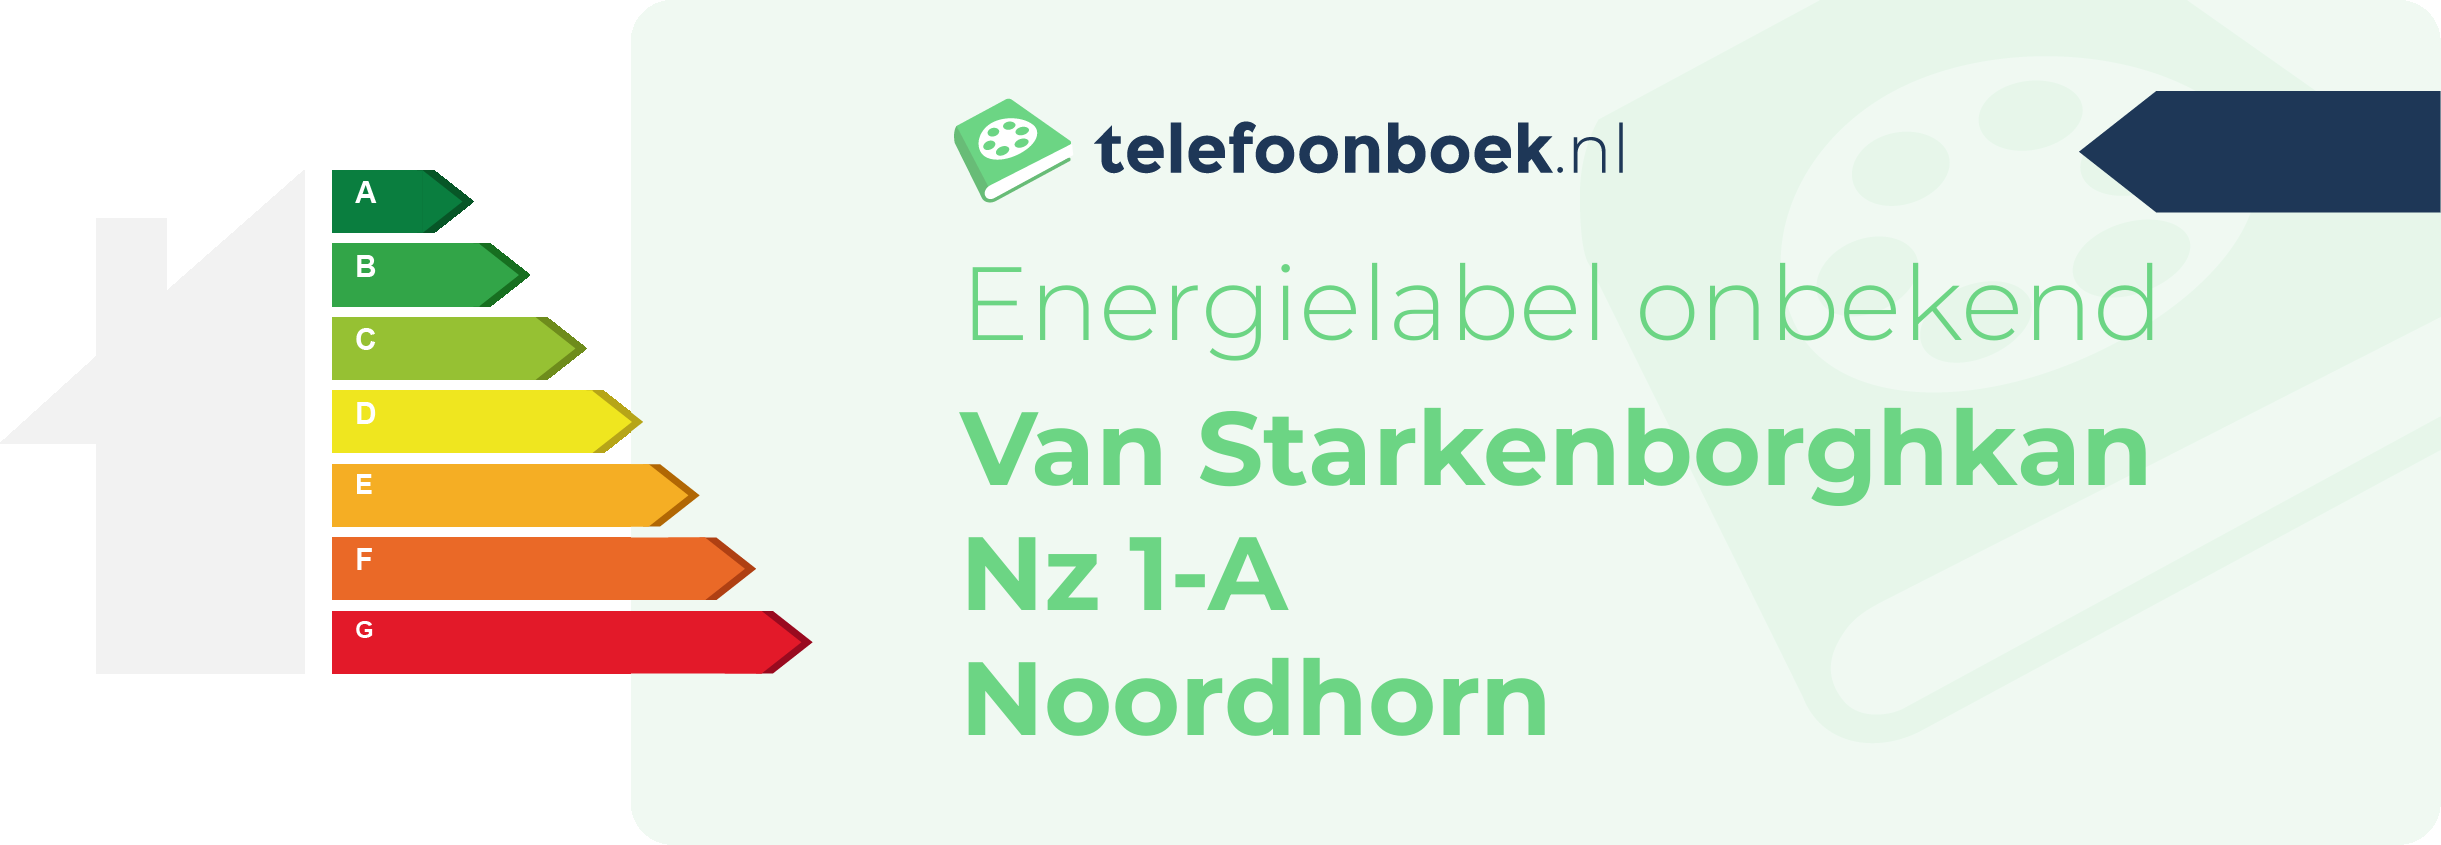 Energielabel Van Starkenborghkan Nz 1-A Noordhorn